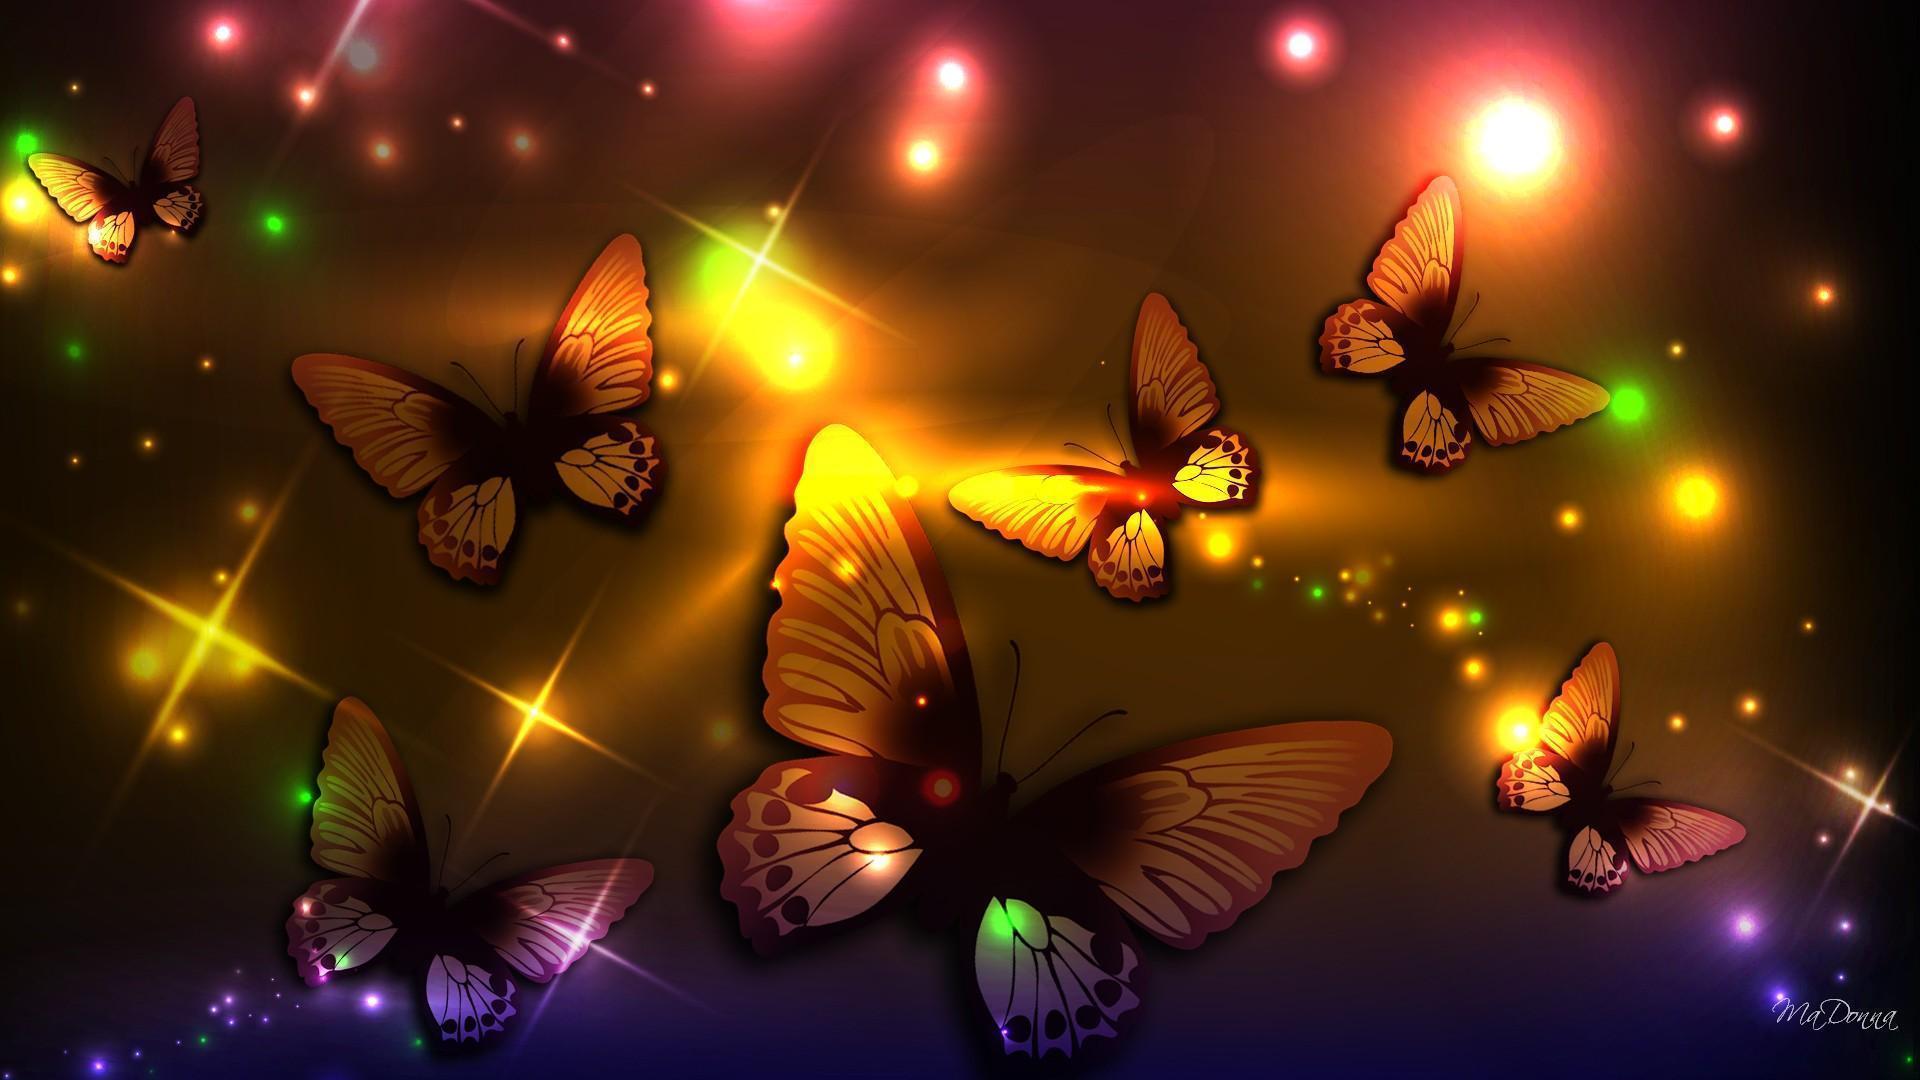 Butterflies Abstract HD Wallpaper Id. Frenzia